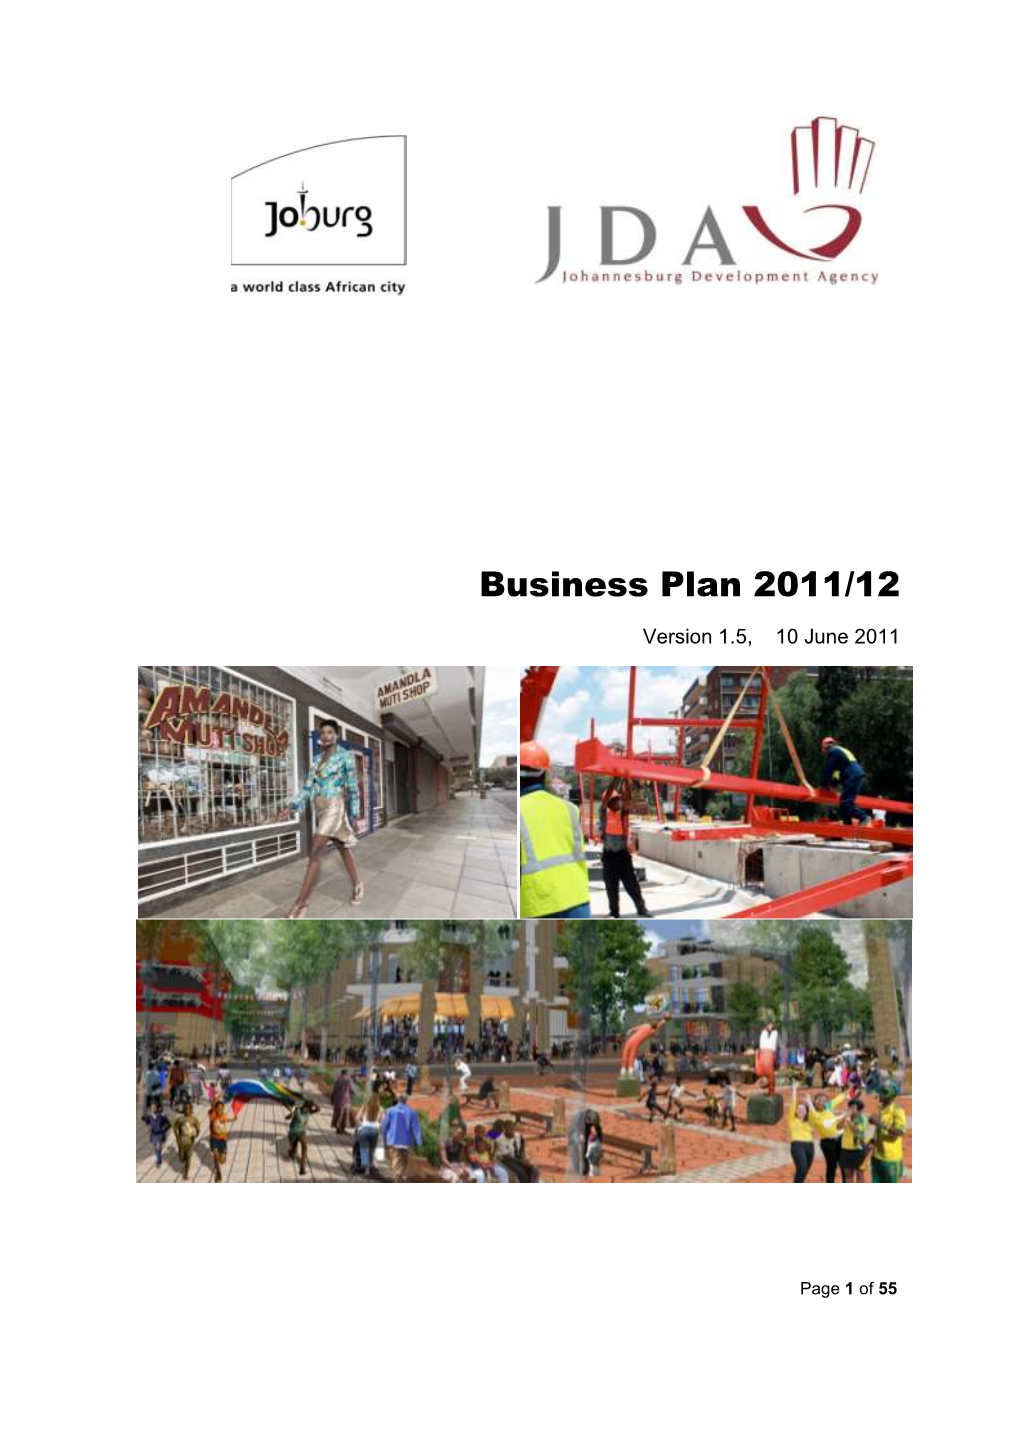 JDA Business Plan 2011/12